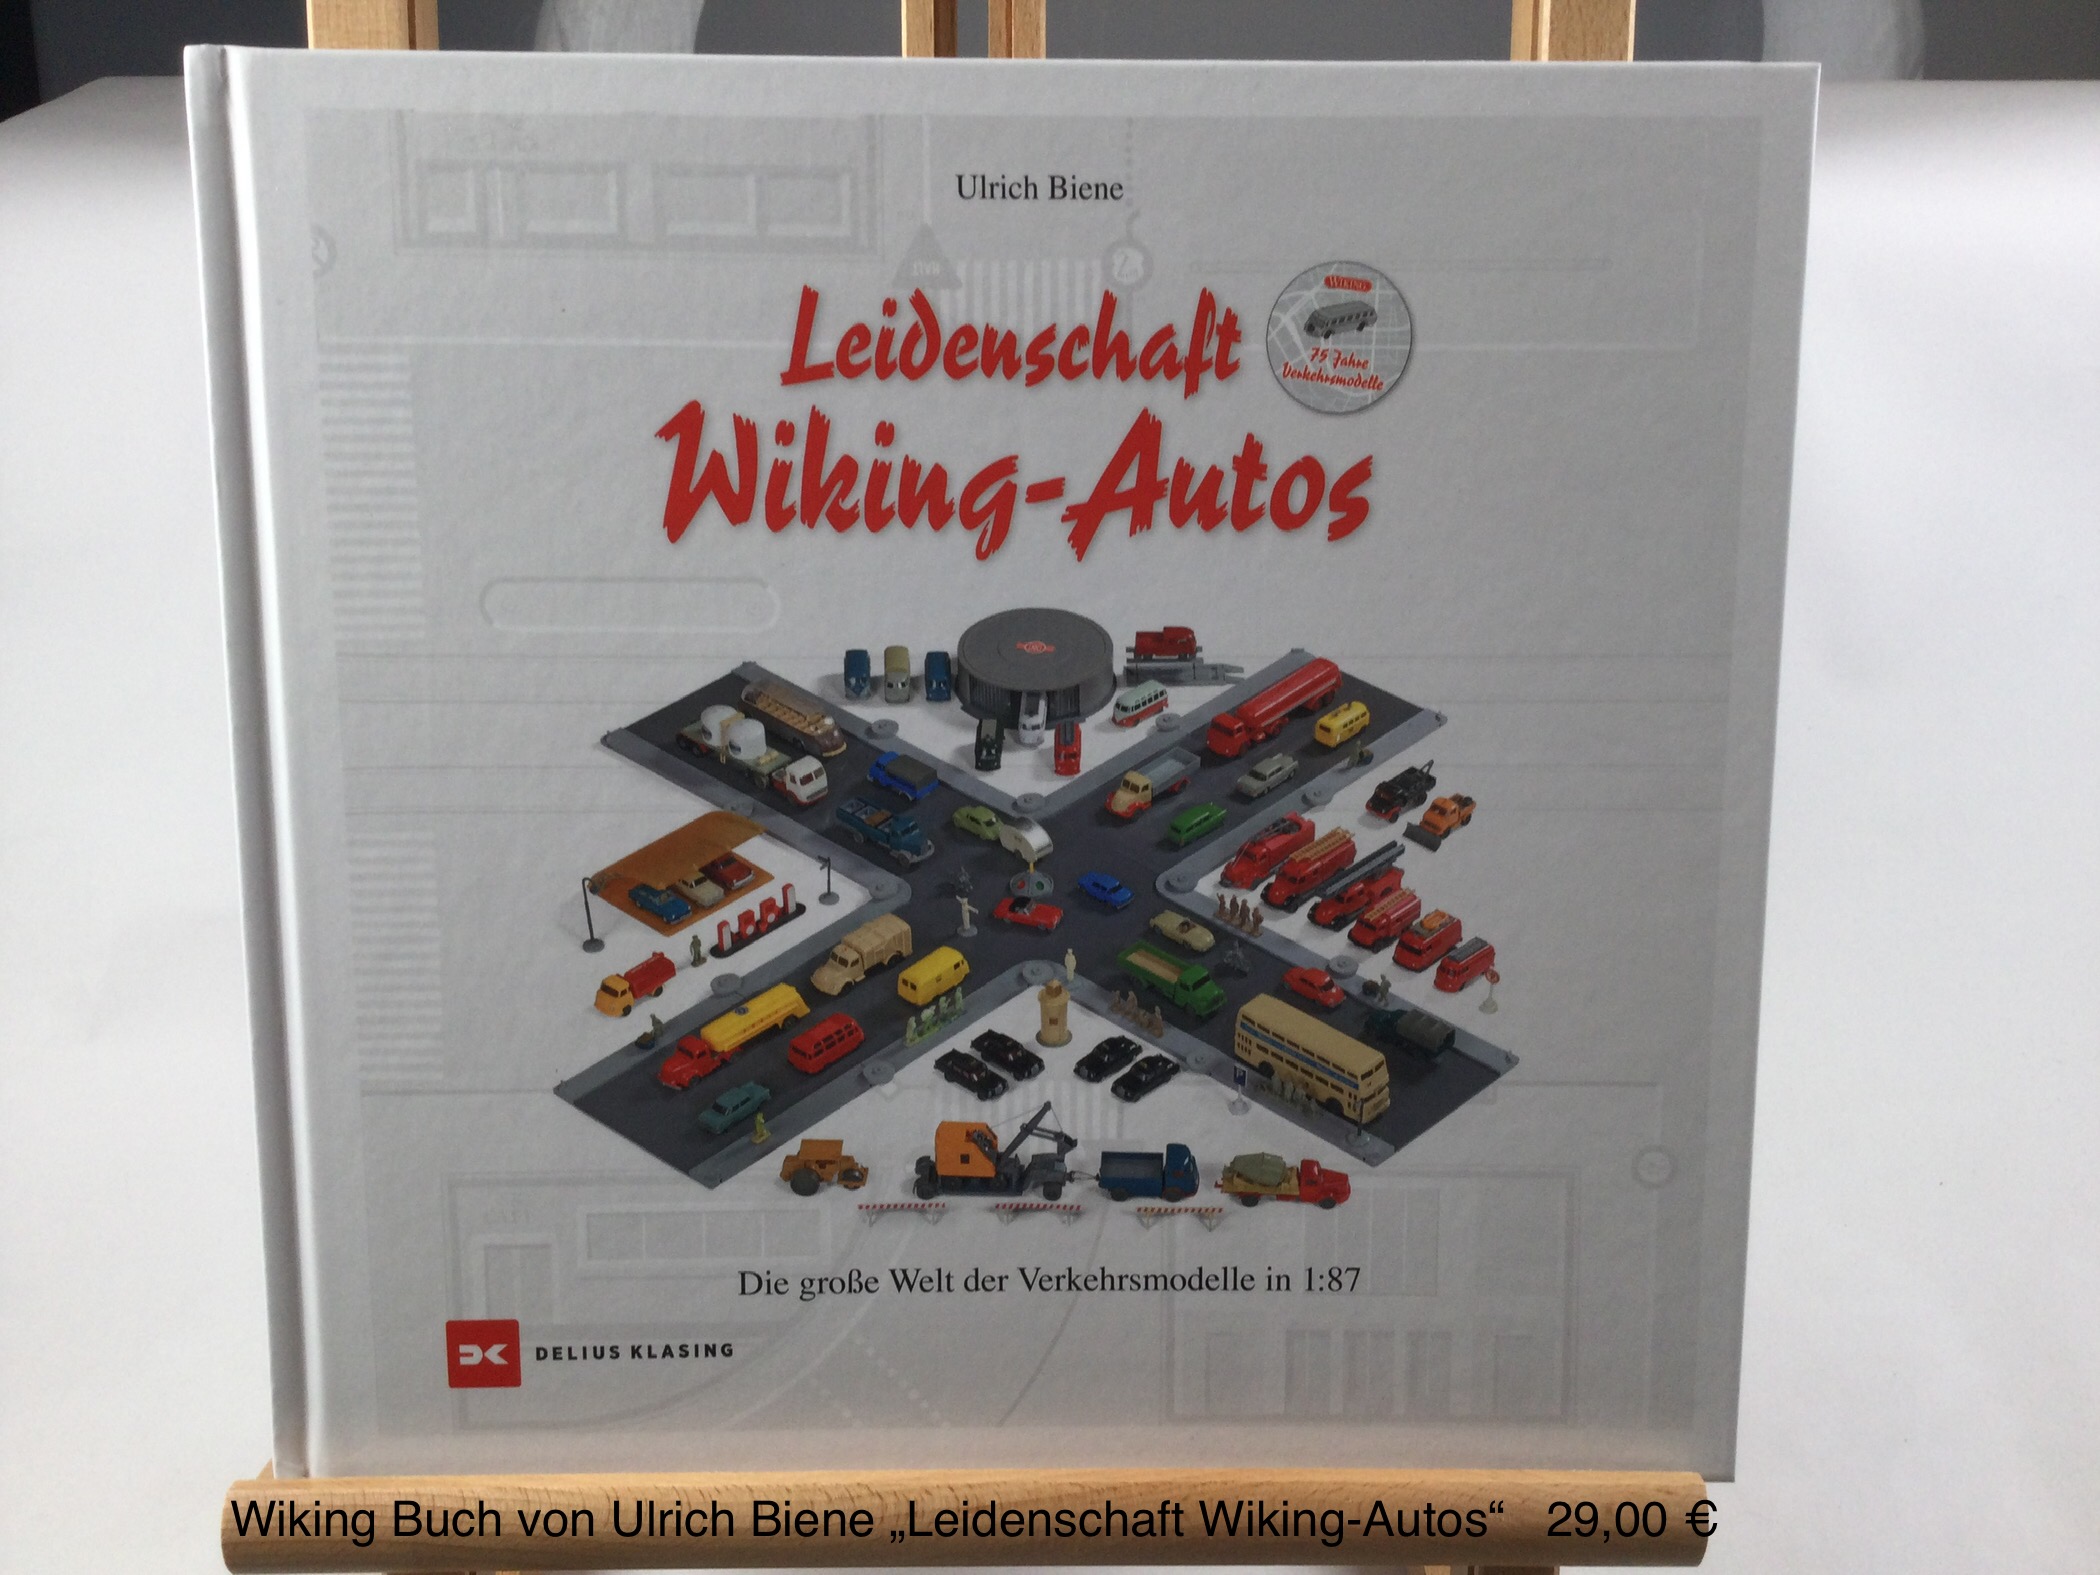 Wiking Buch von Ulrich Biene "Leidenschaft Wiking-Autos"